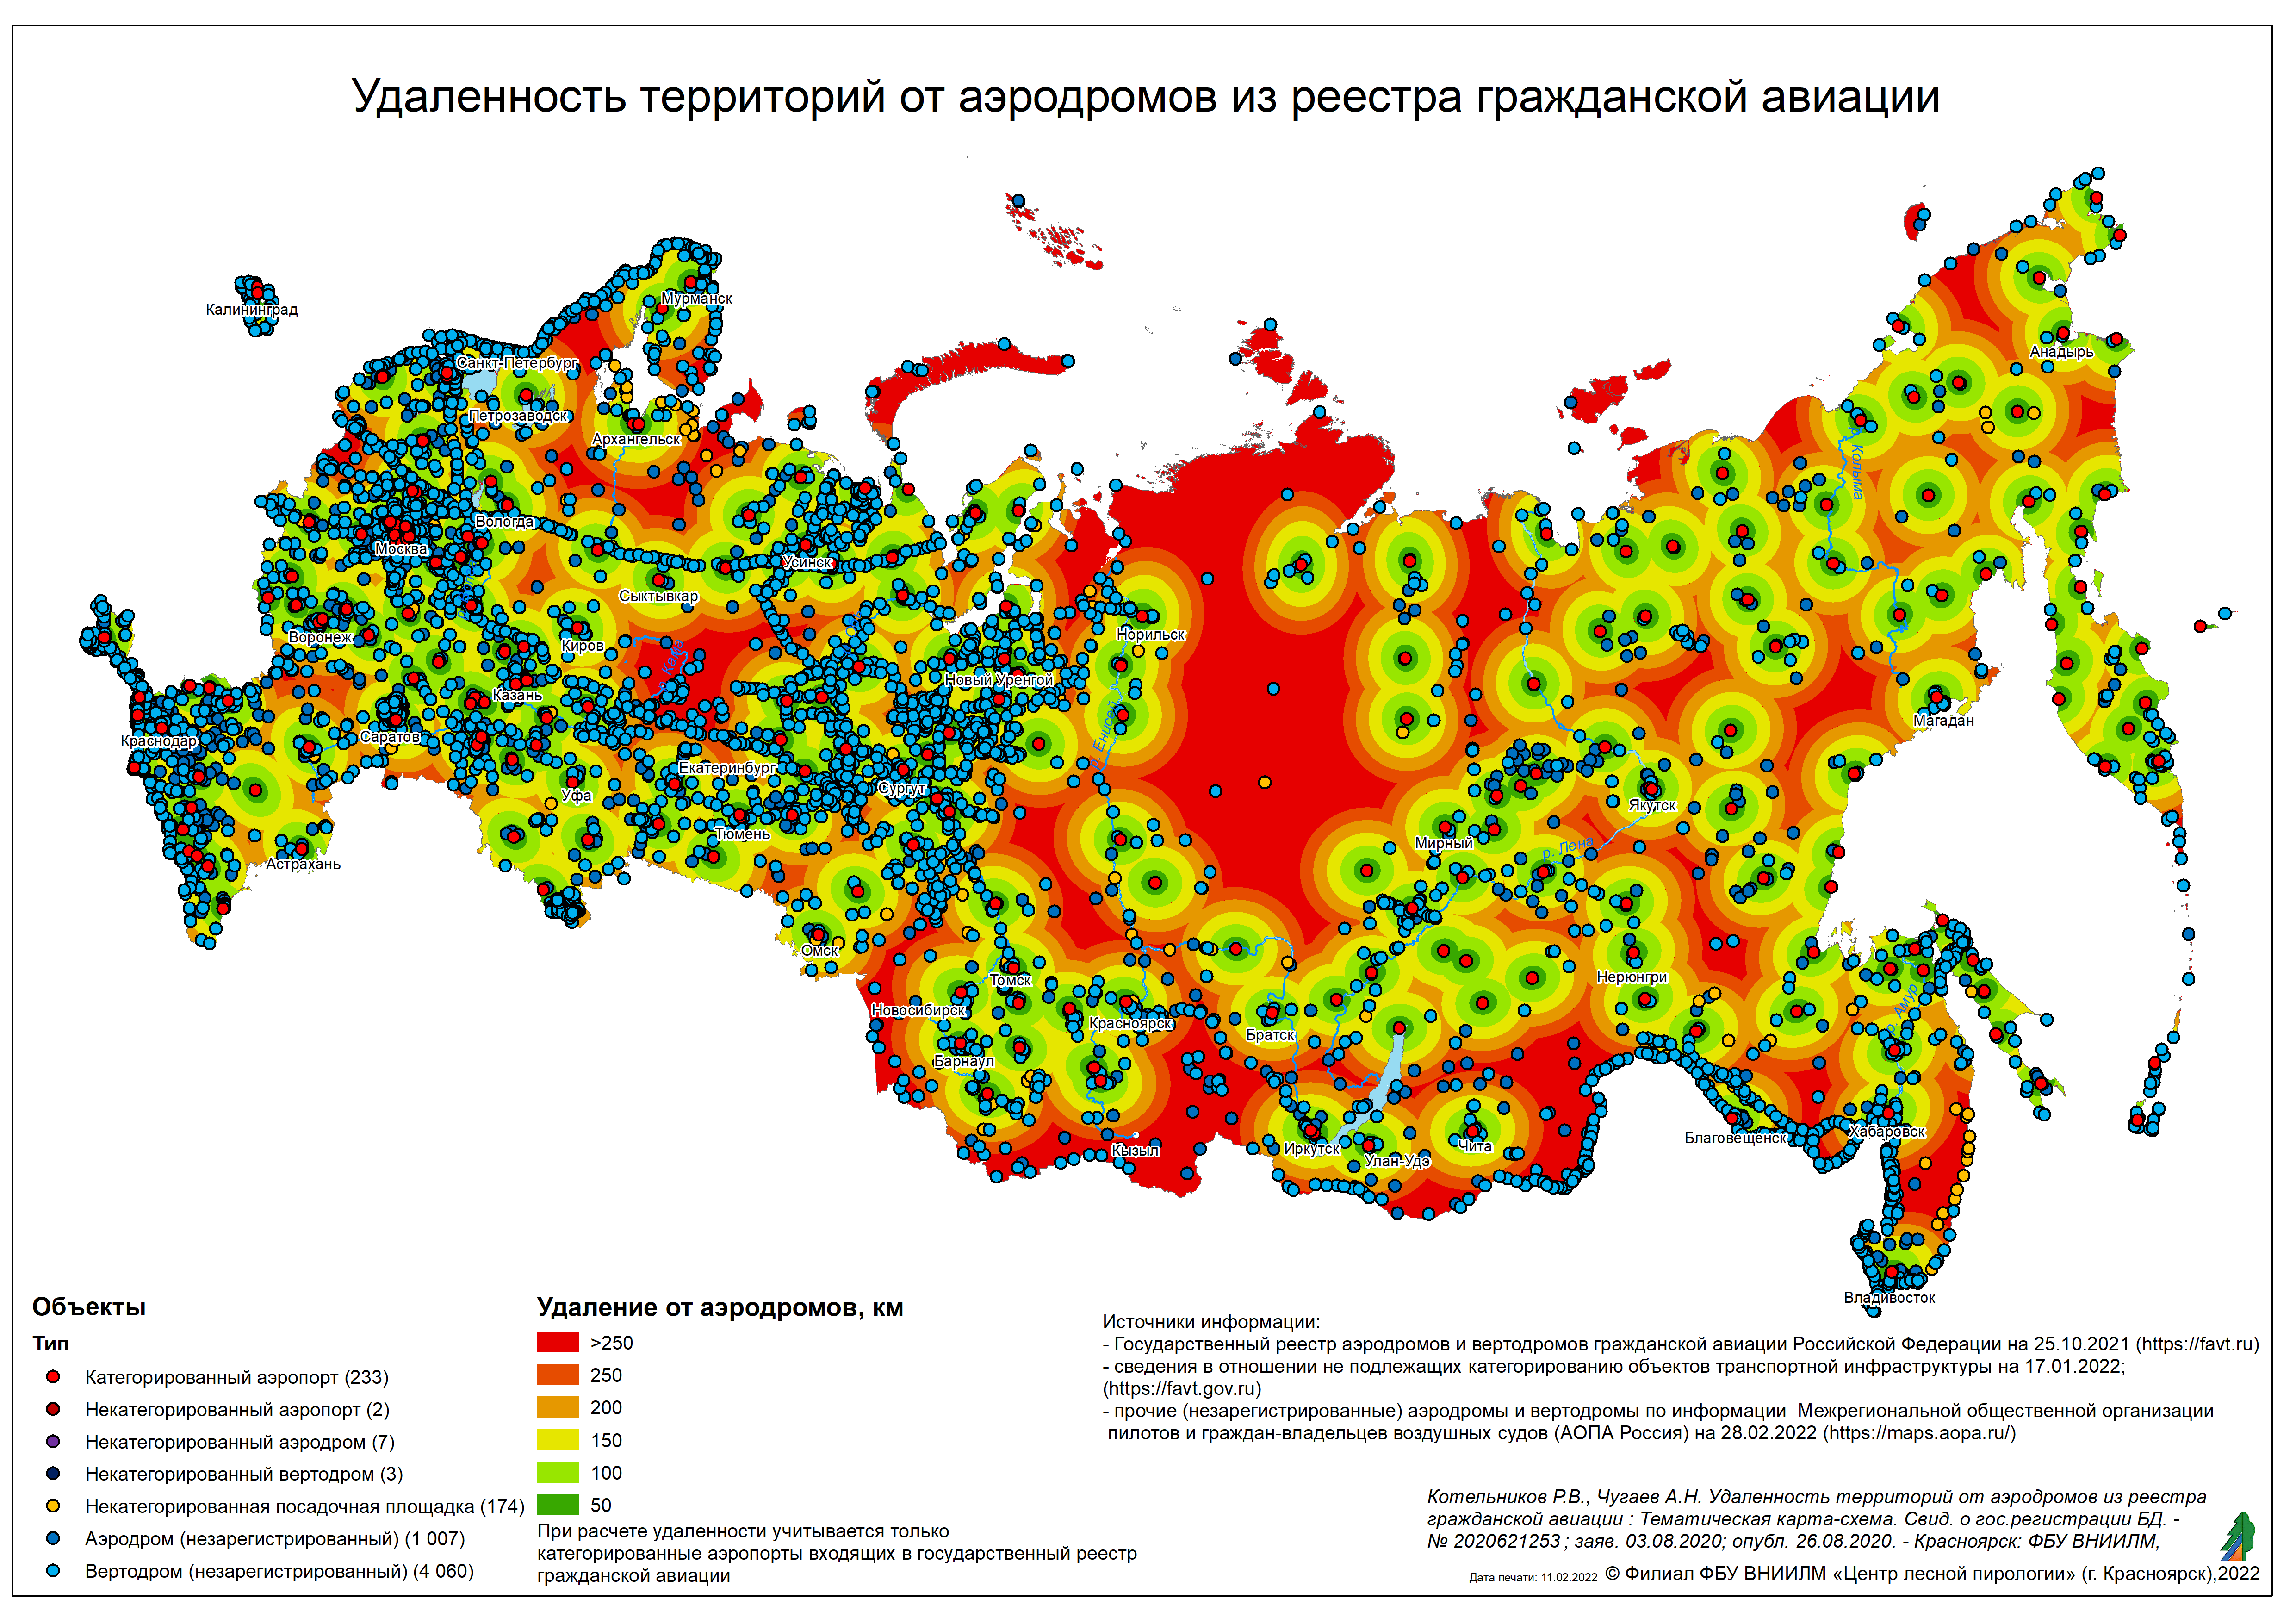 Удаленные территории Российской Федерации